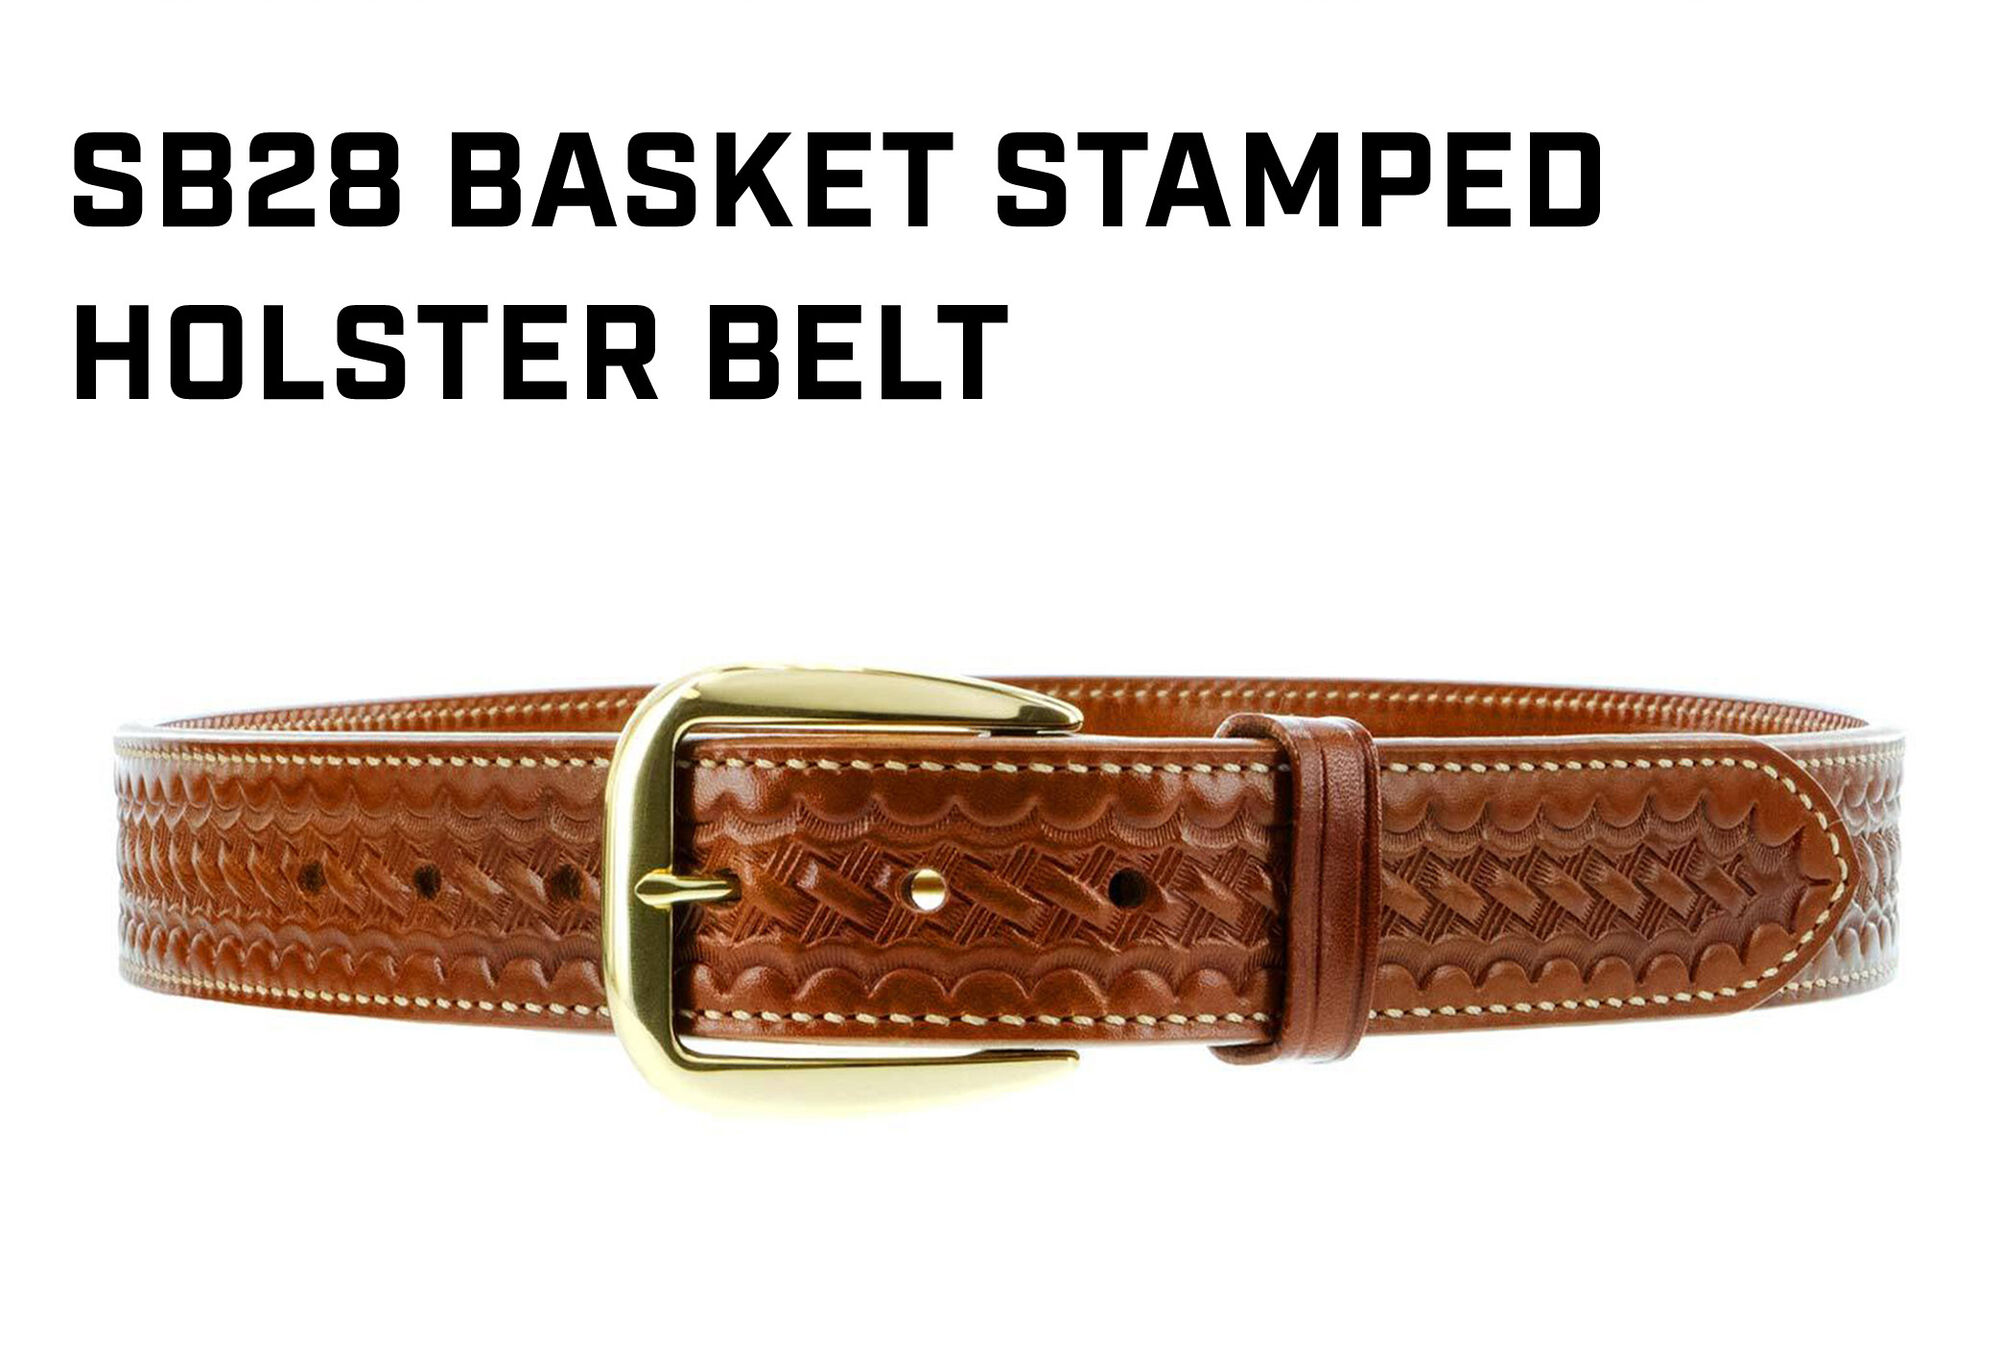 SB28 Basket Stamped Holster Belt